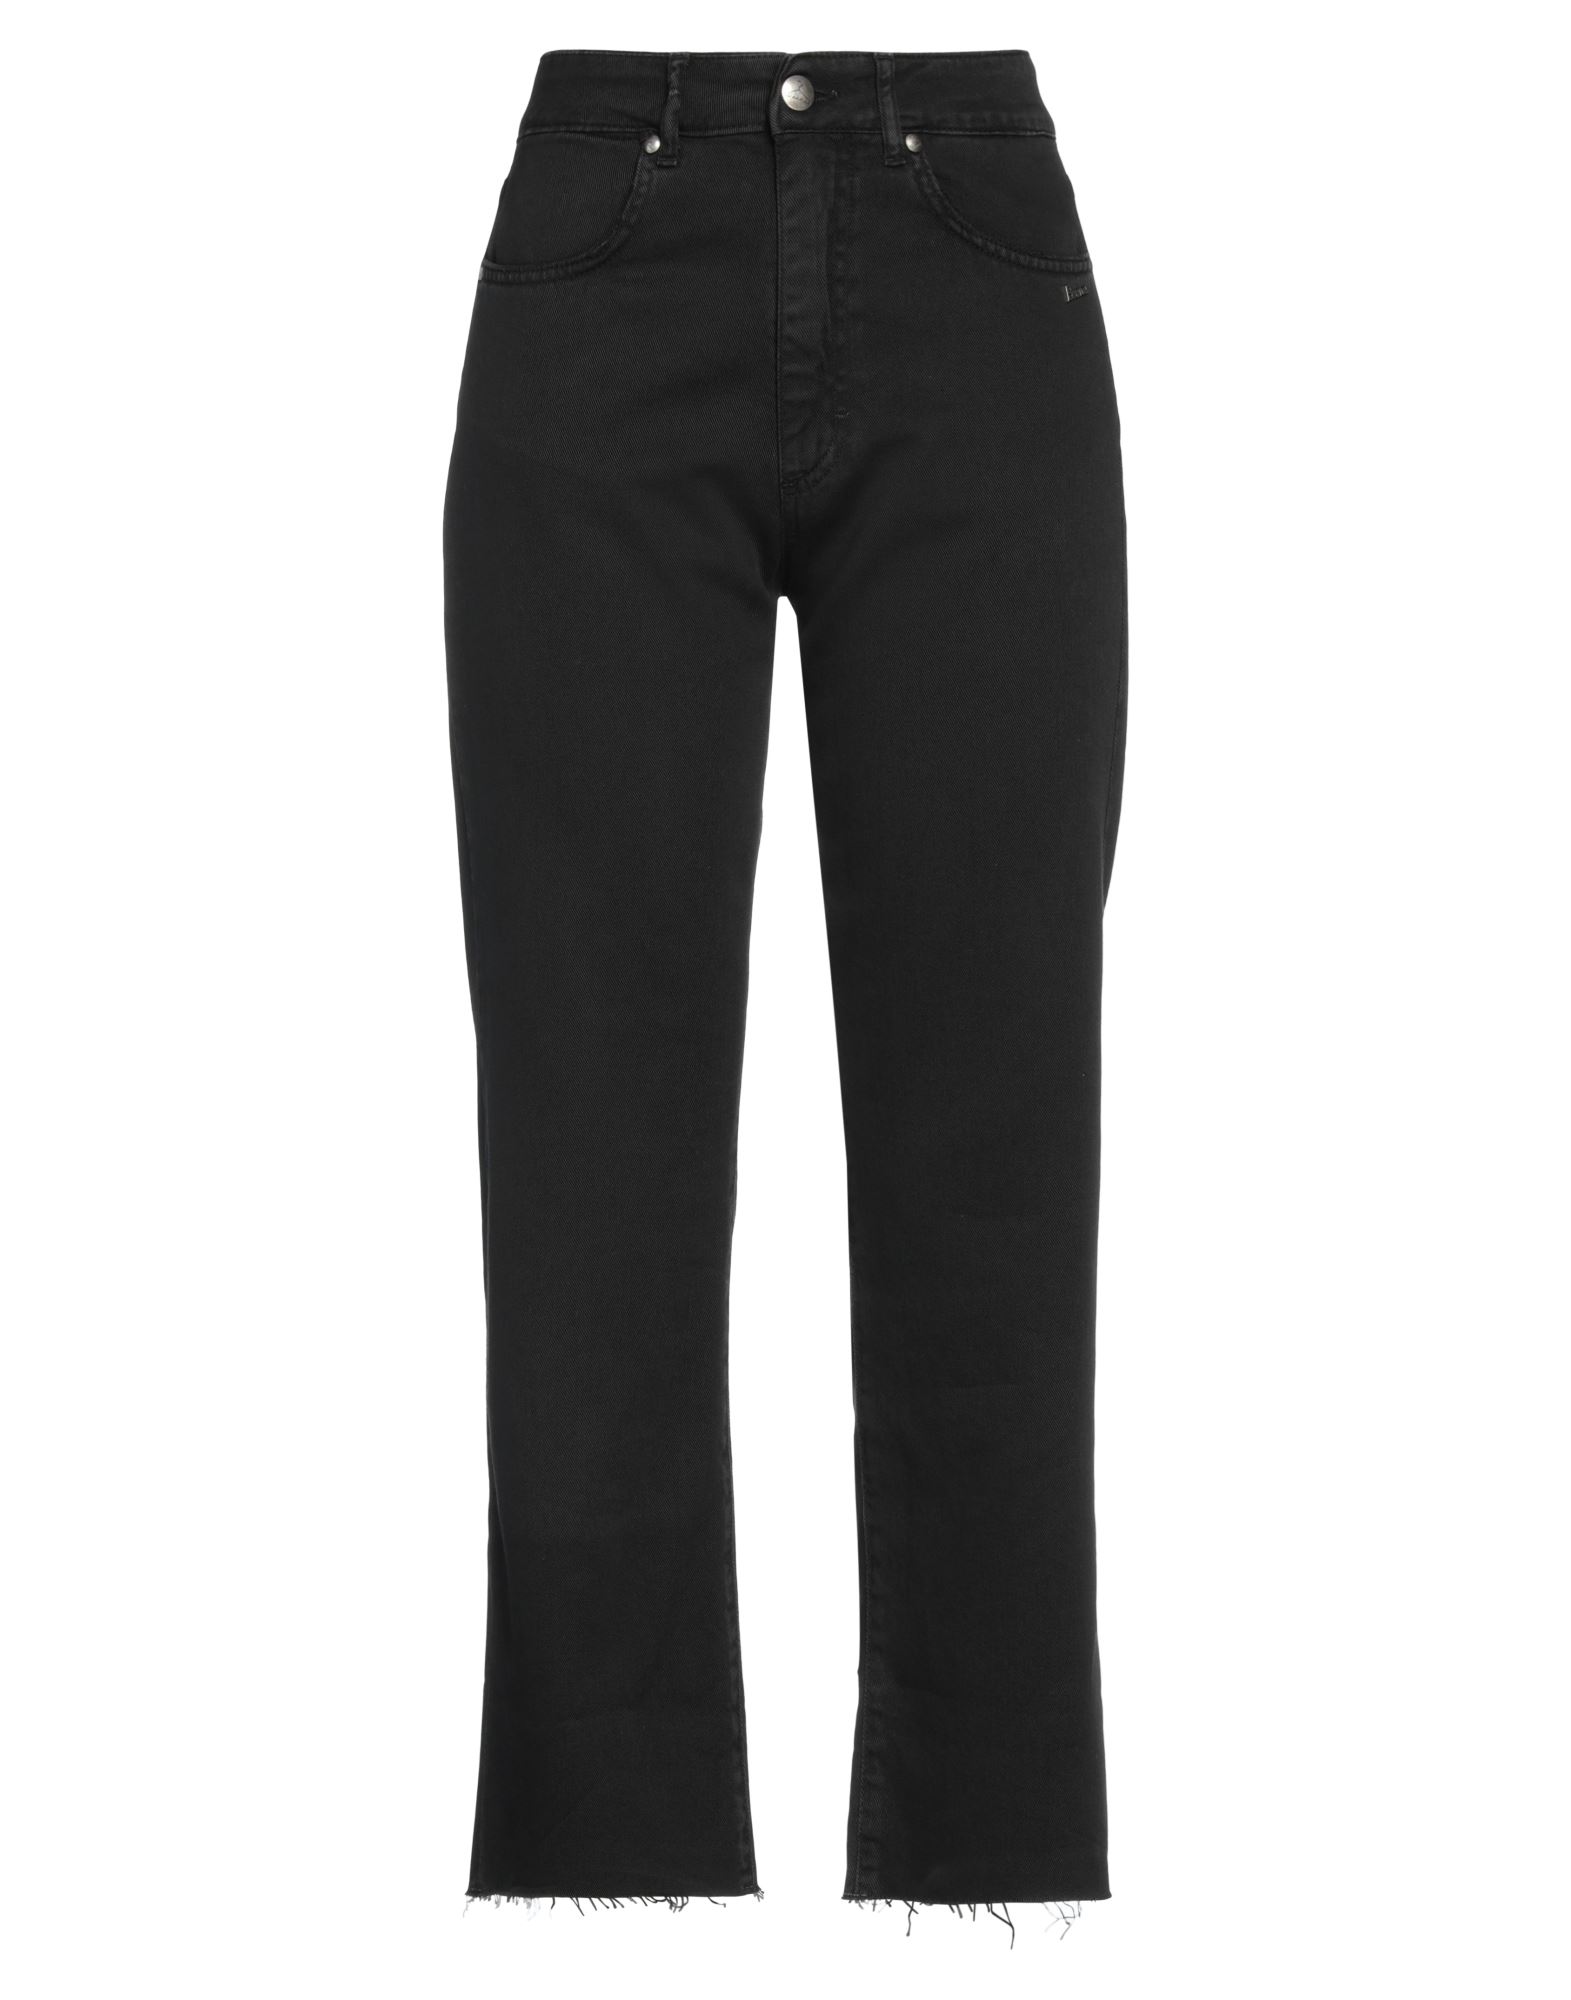 Shop Berna Woman Pants Black Size 4 Cotton